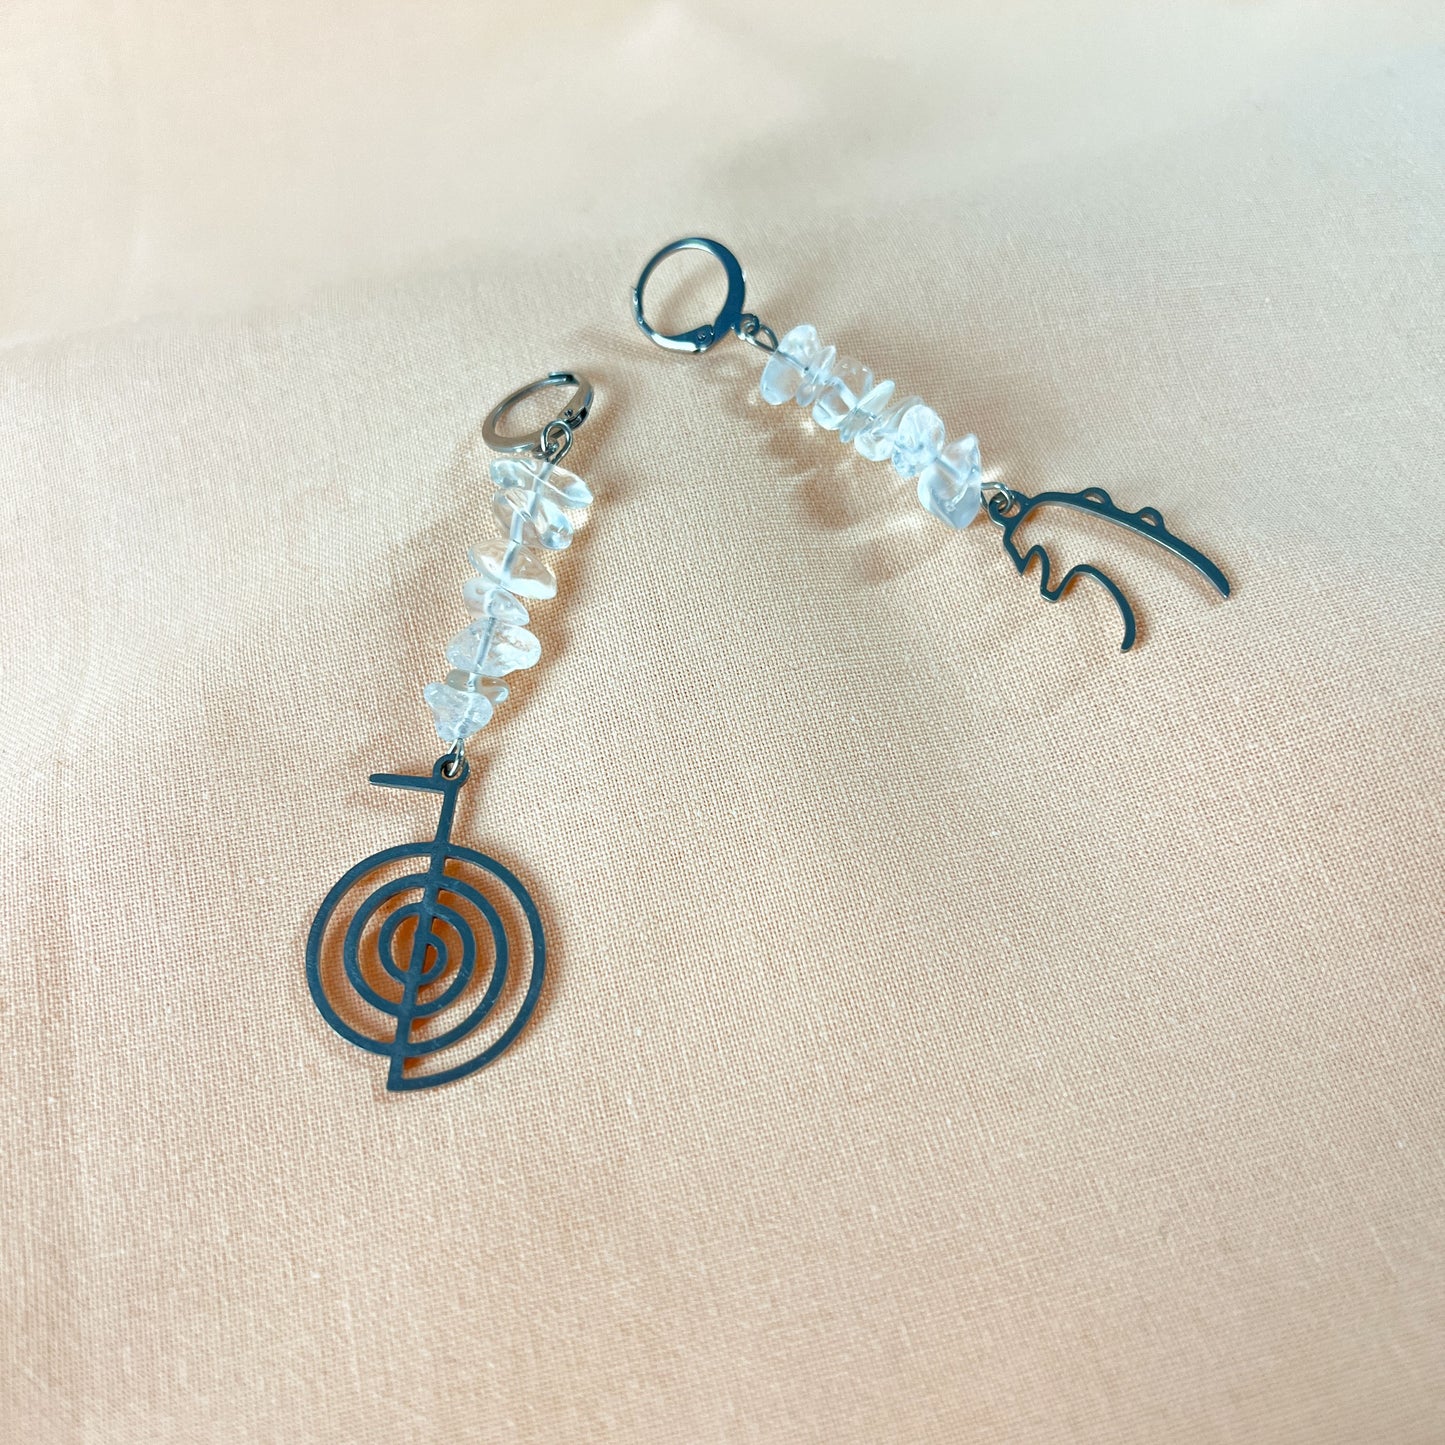 Reiki symbol earrings quartz and stainless steel Cho Ku Rei and Sei He Ki